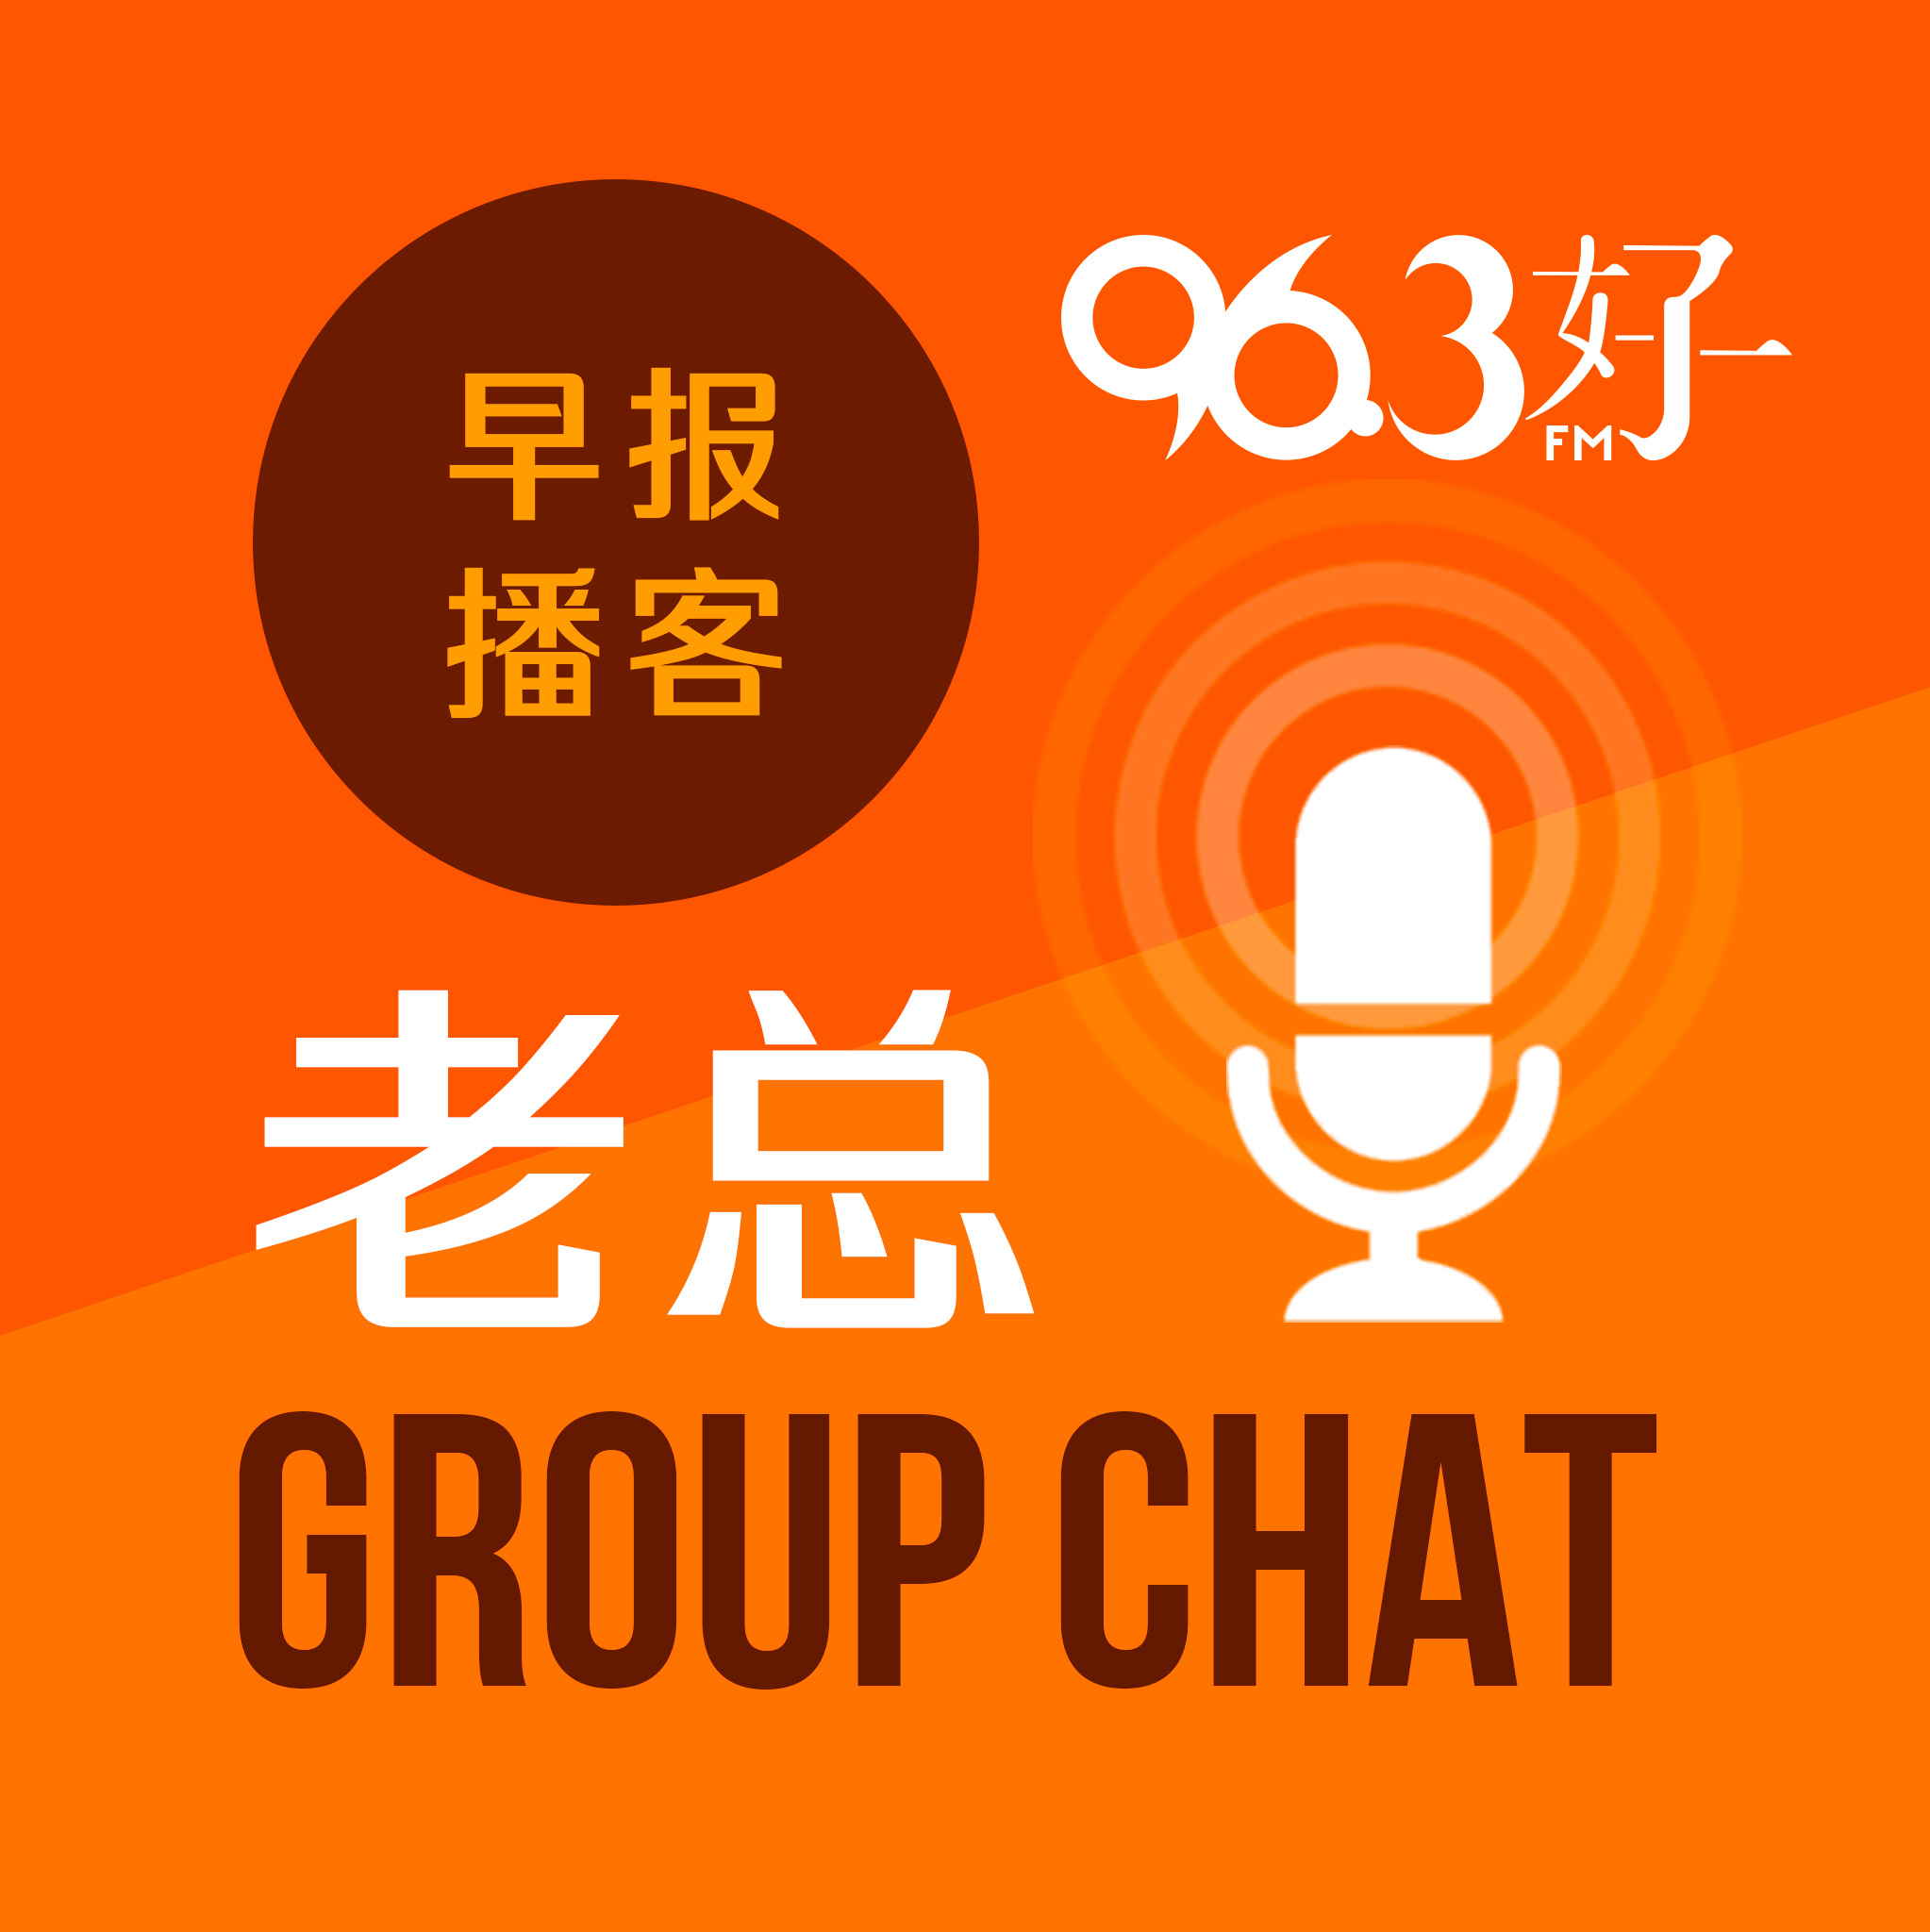 1月29日《老总 Group Chat》：孤独感导致网用量大增